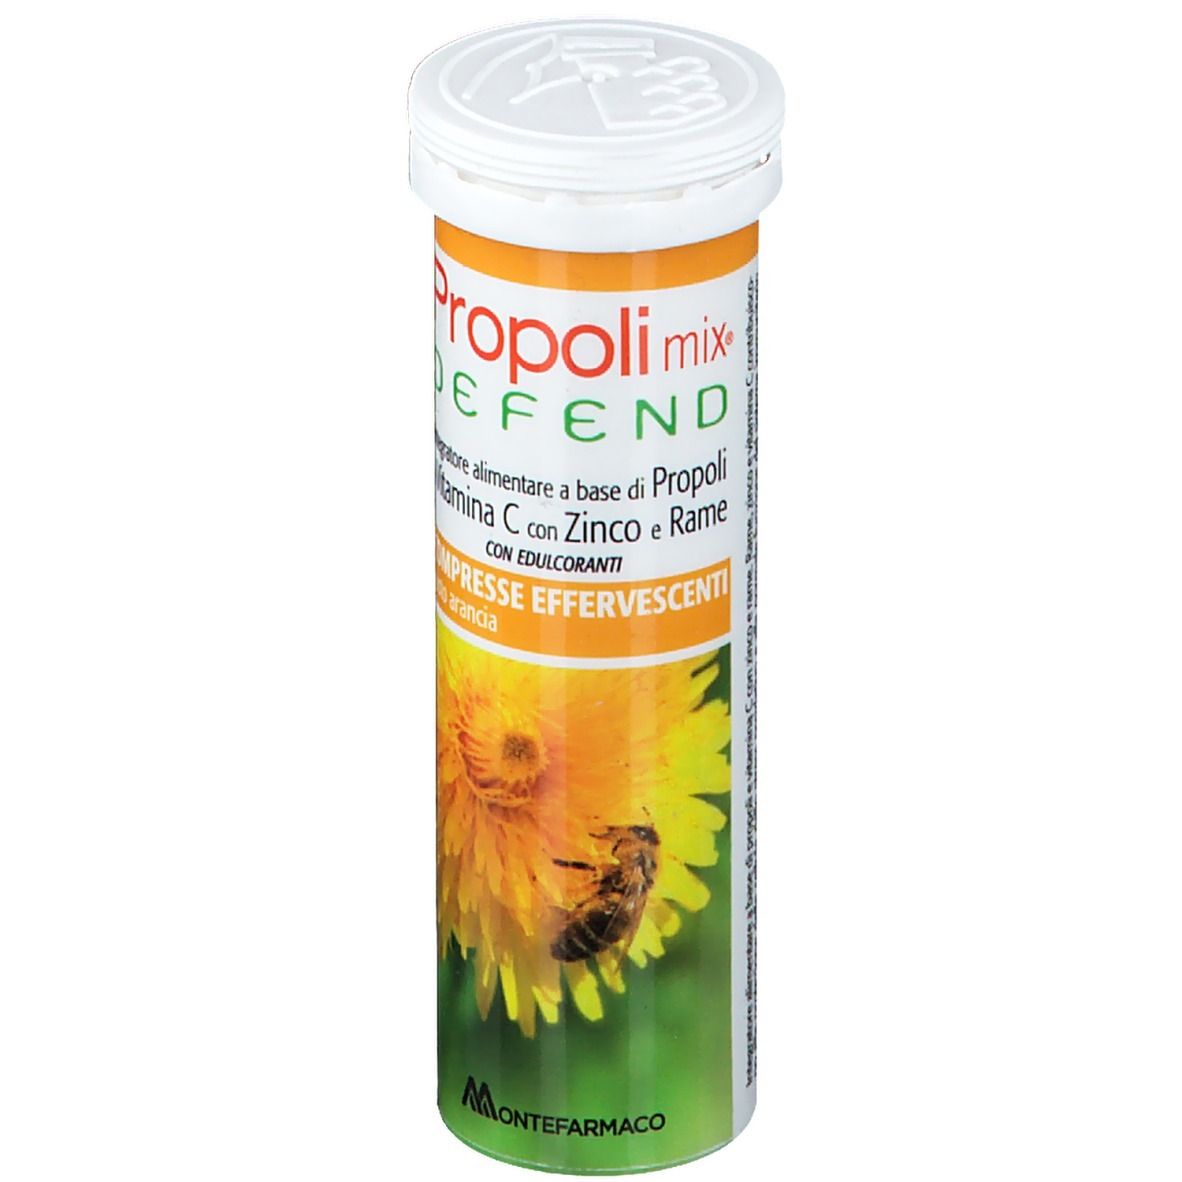 Propoli Mix® Defend Compresse Effervescenti Gusto Arancia